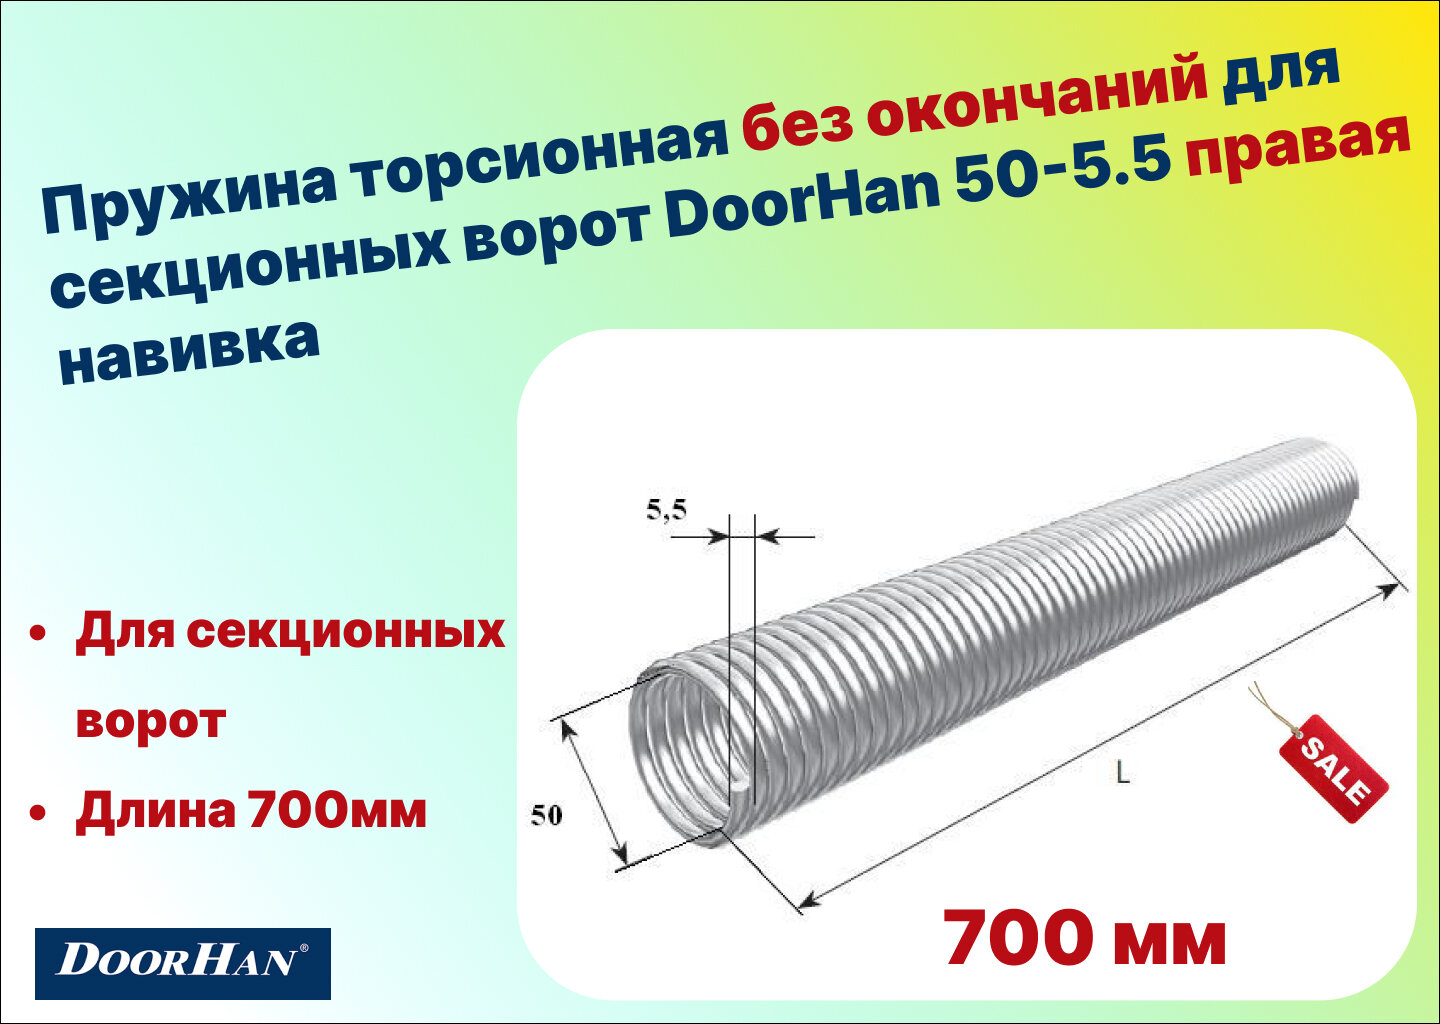 Пружина торсионная без окончаний для секционных ворот DoorHan 50-5.5 правая навивка, длина 700 мм (32055/mR/RAL7004 )